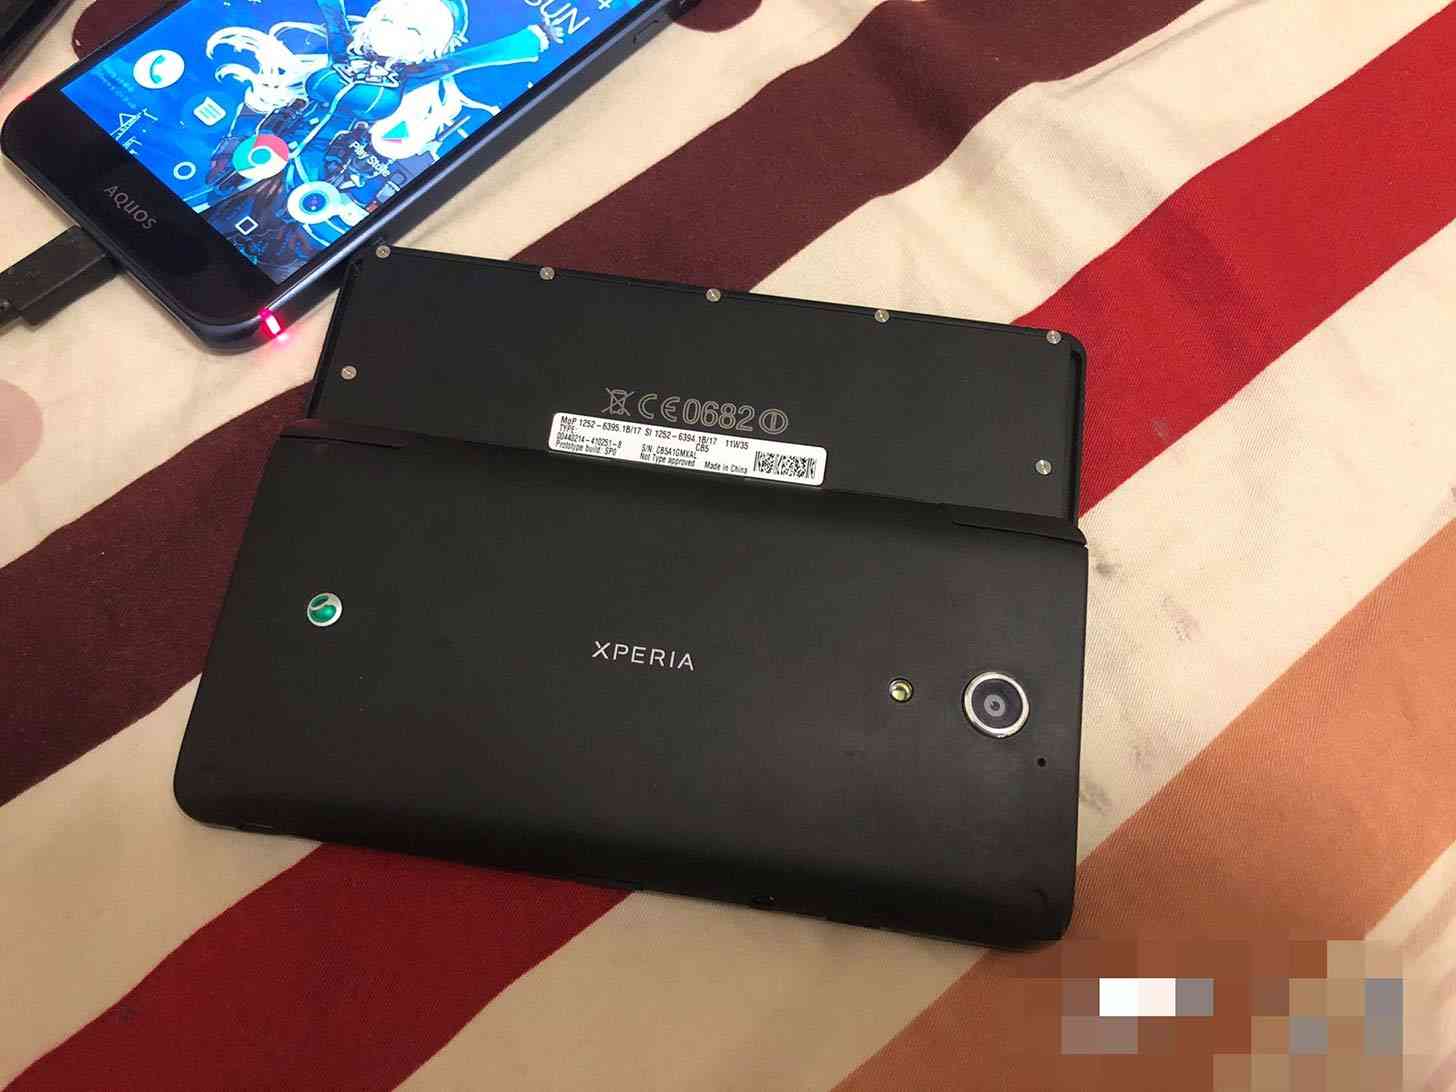 Sony Xperia Play 2 rear